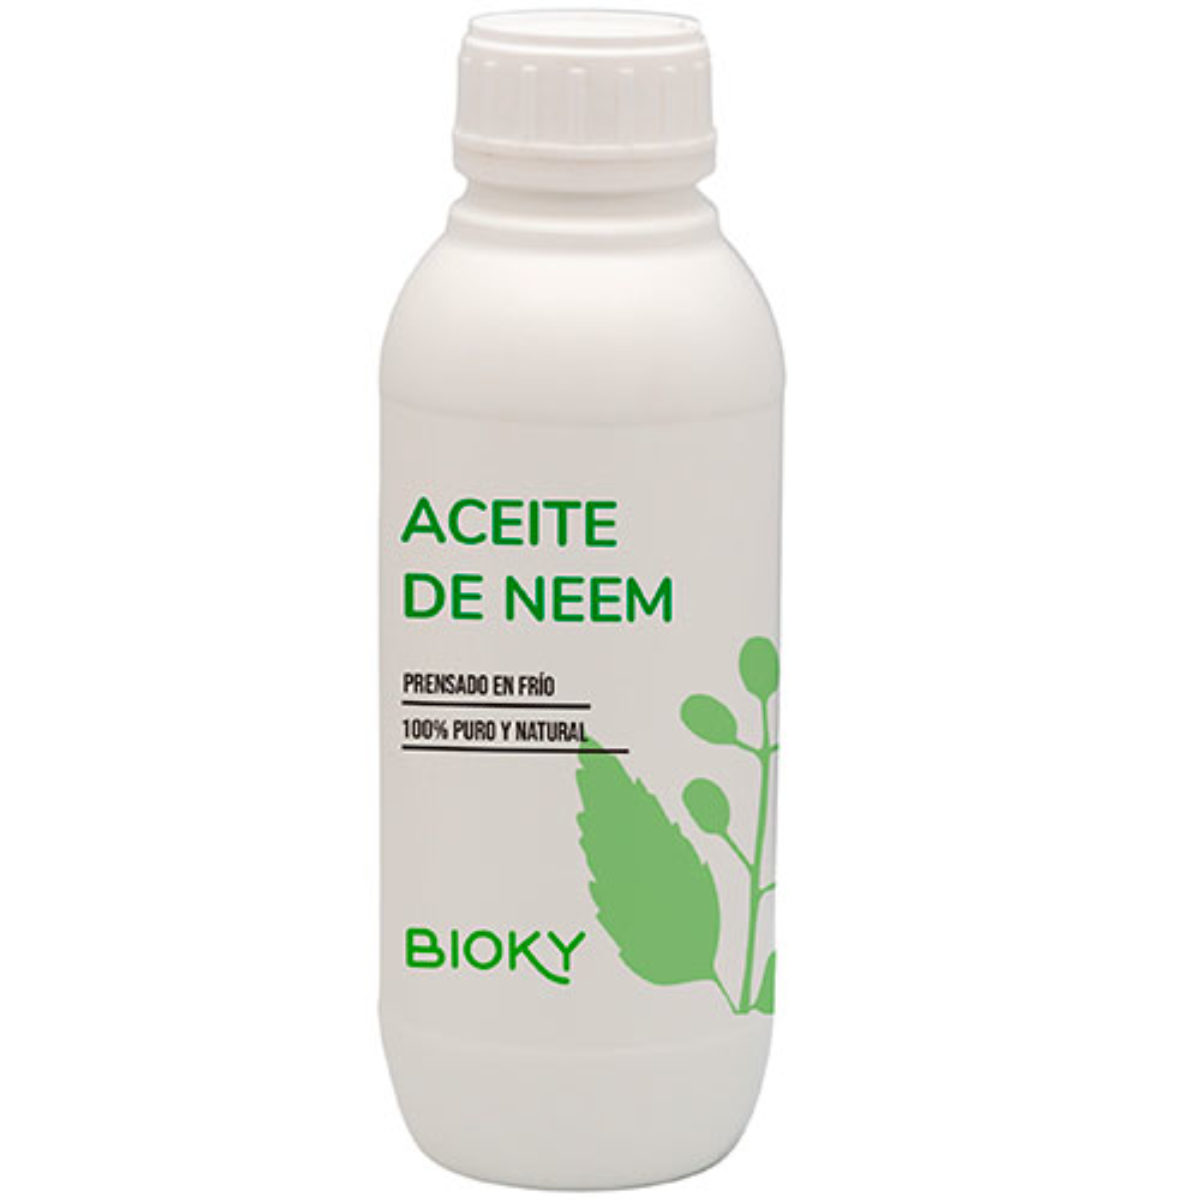 Aceite de Neem Puro Prensado en Frío